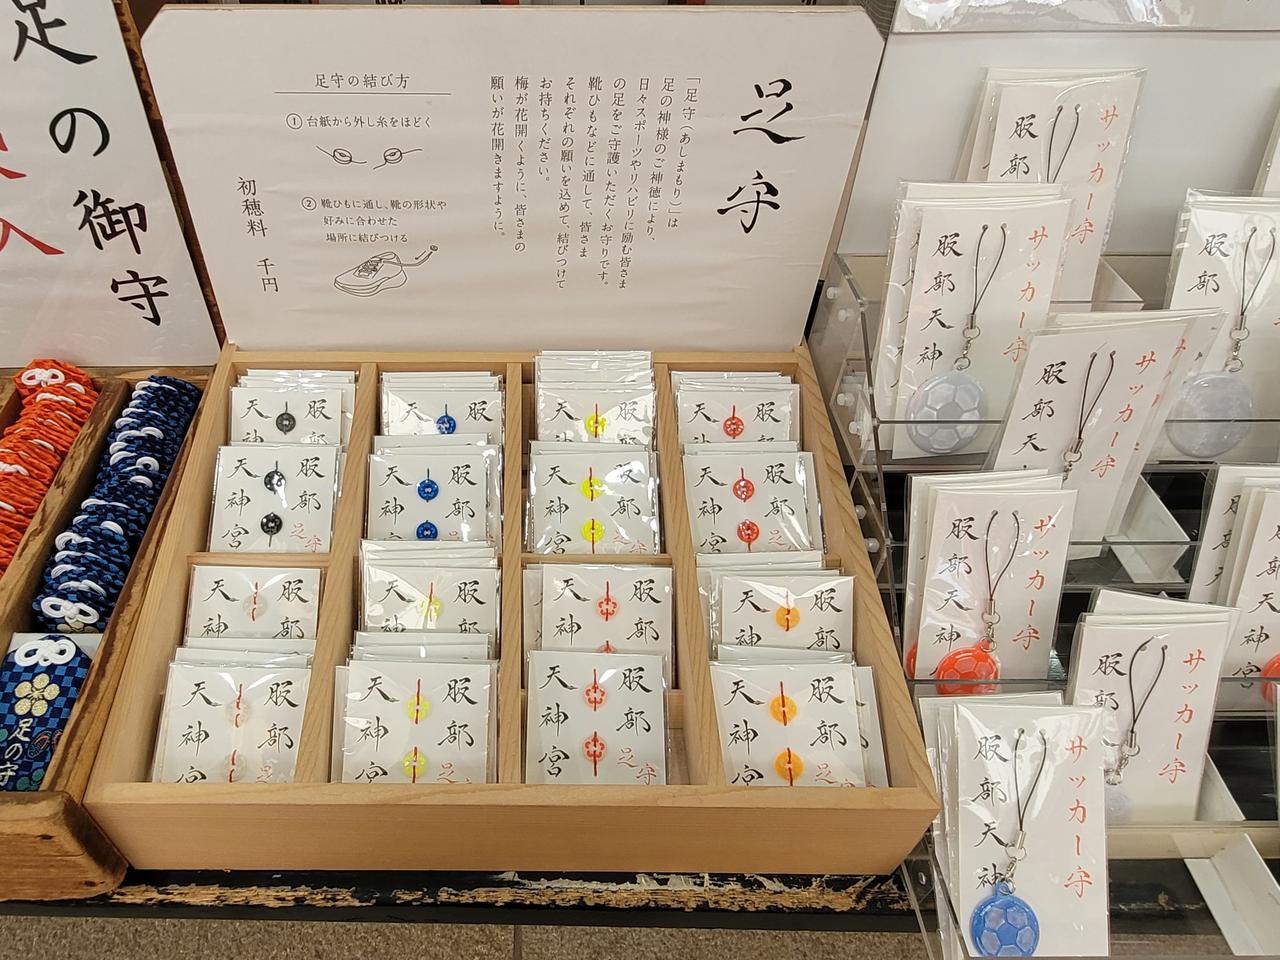 Amulette für Laufsportler, beschrieben mit japanischen Schriftzeichen, werden in einer Holzkiste angeboten.